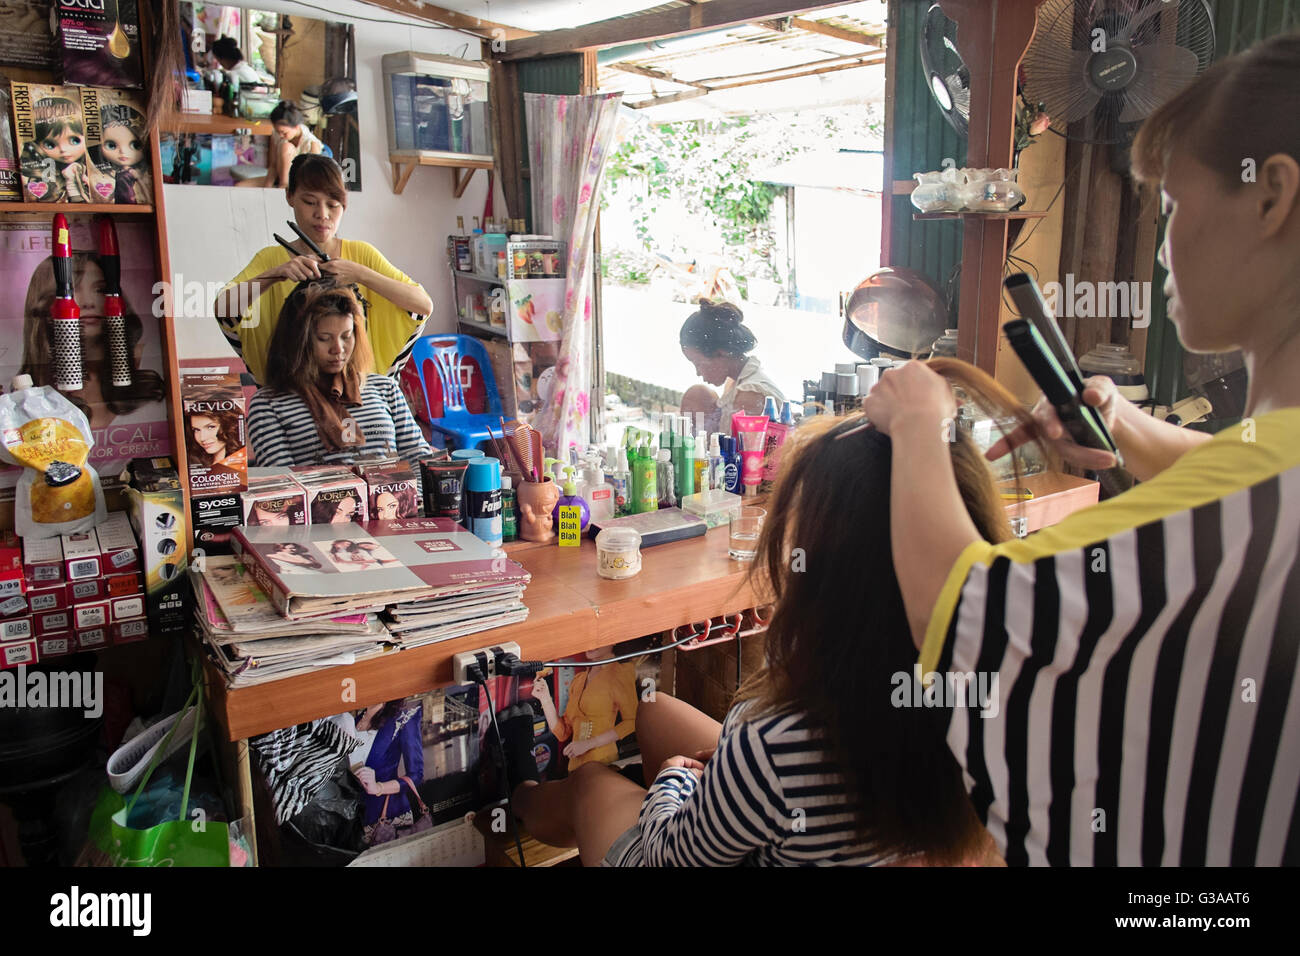 A woman has her hair cut at a beauty salon in Sakkarine Road, Ban Watsene, Luang Prabang, Luang Prabang Province, Laos Stock Photo